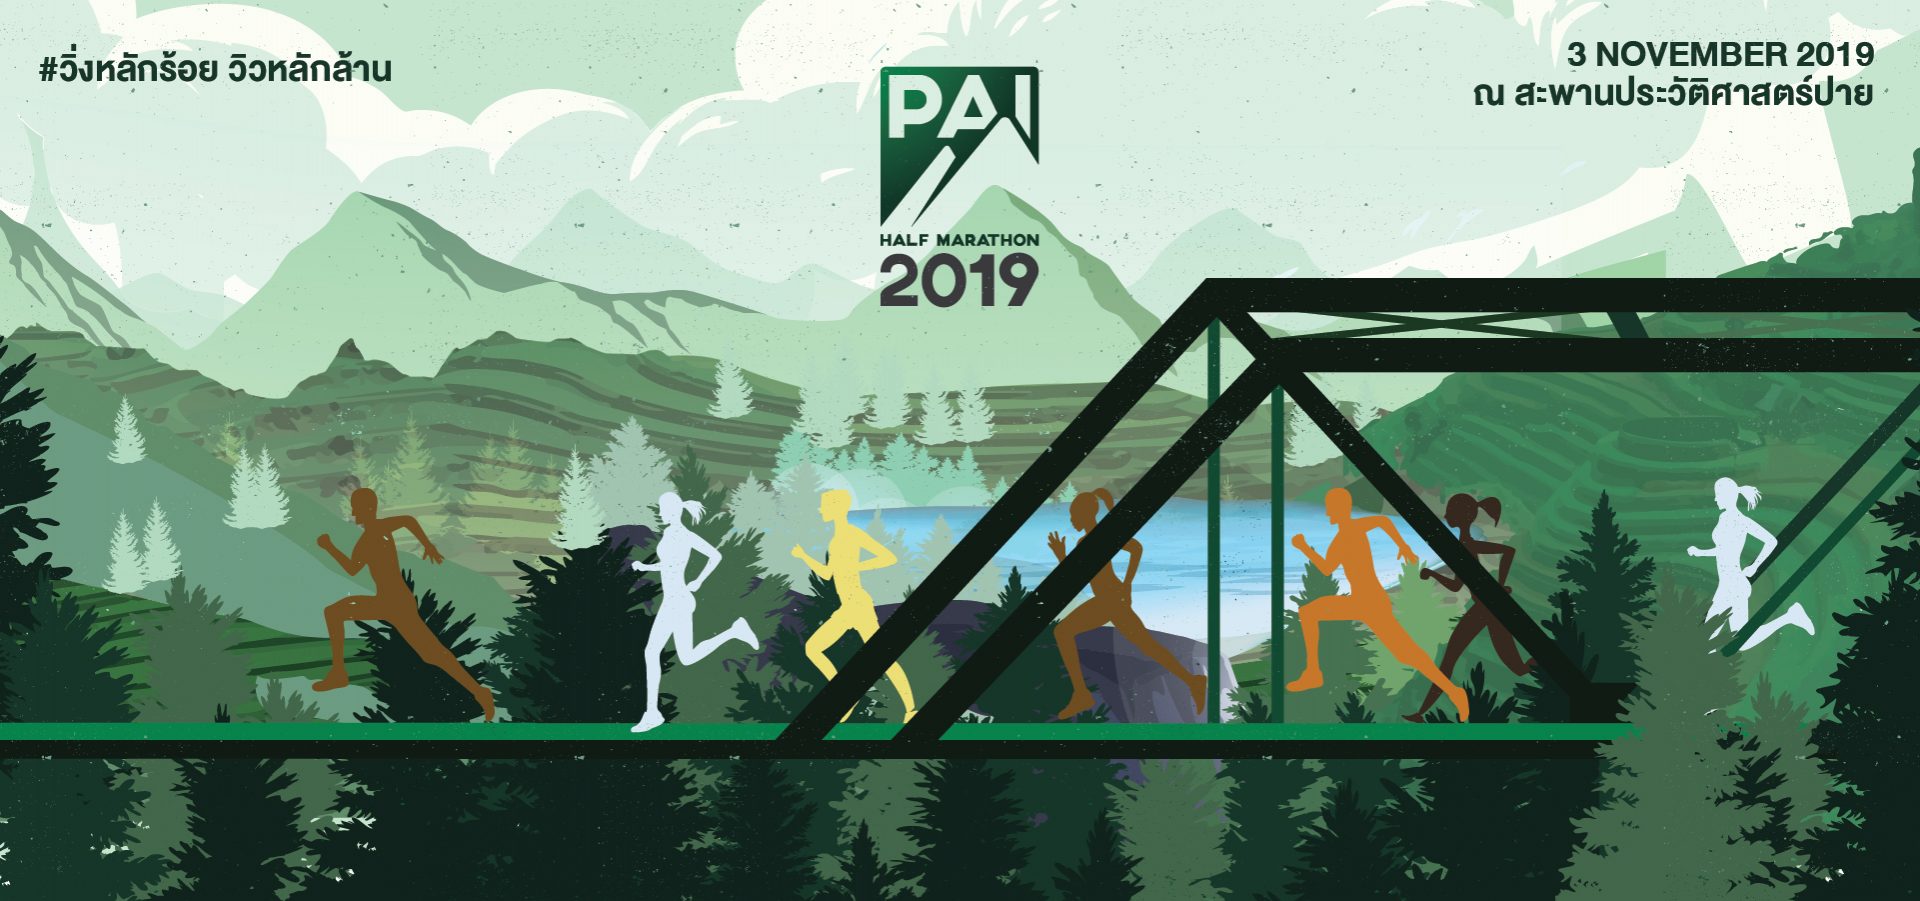 ติดตามงานวิ่ง Pai Half Marathon 2019 งานวิ่งหลักร้อยแต่วิวหลักล้าน วันที่ 3 พ.ย. 2562